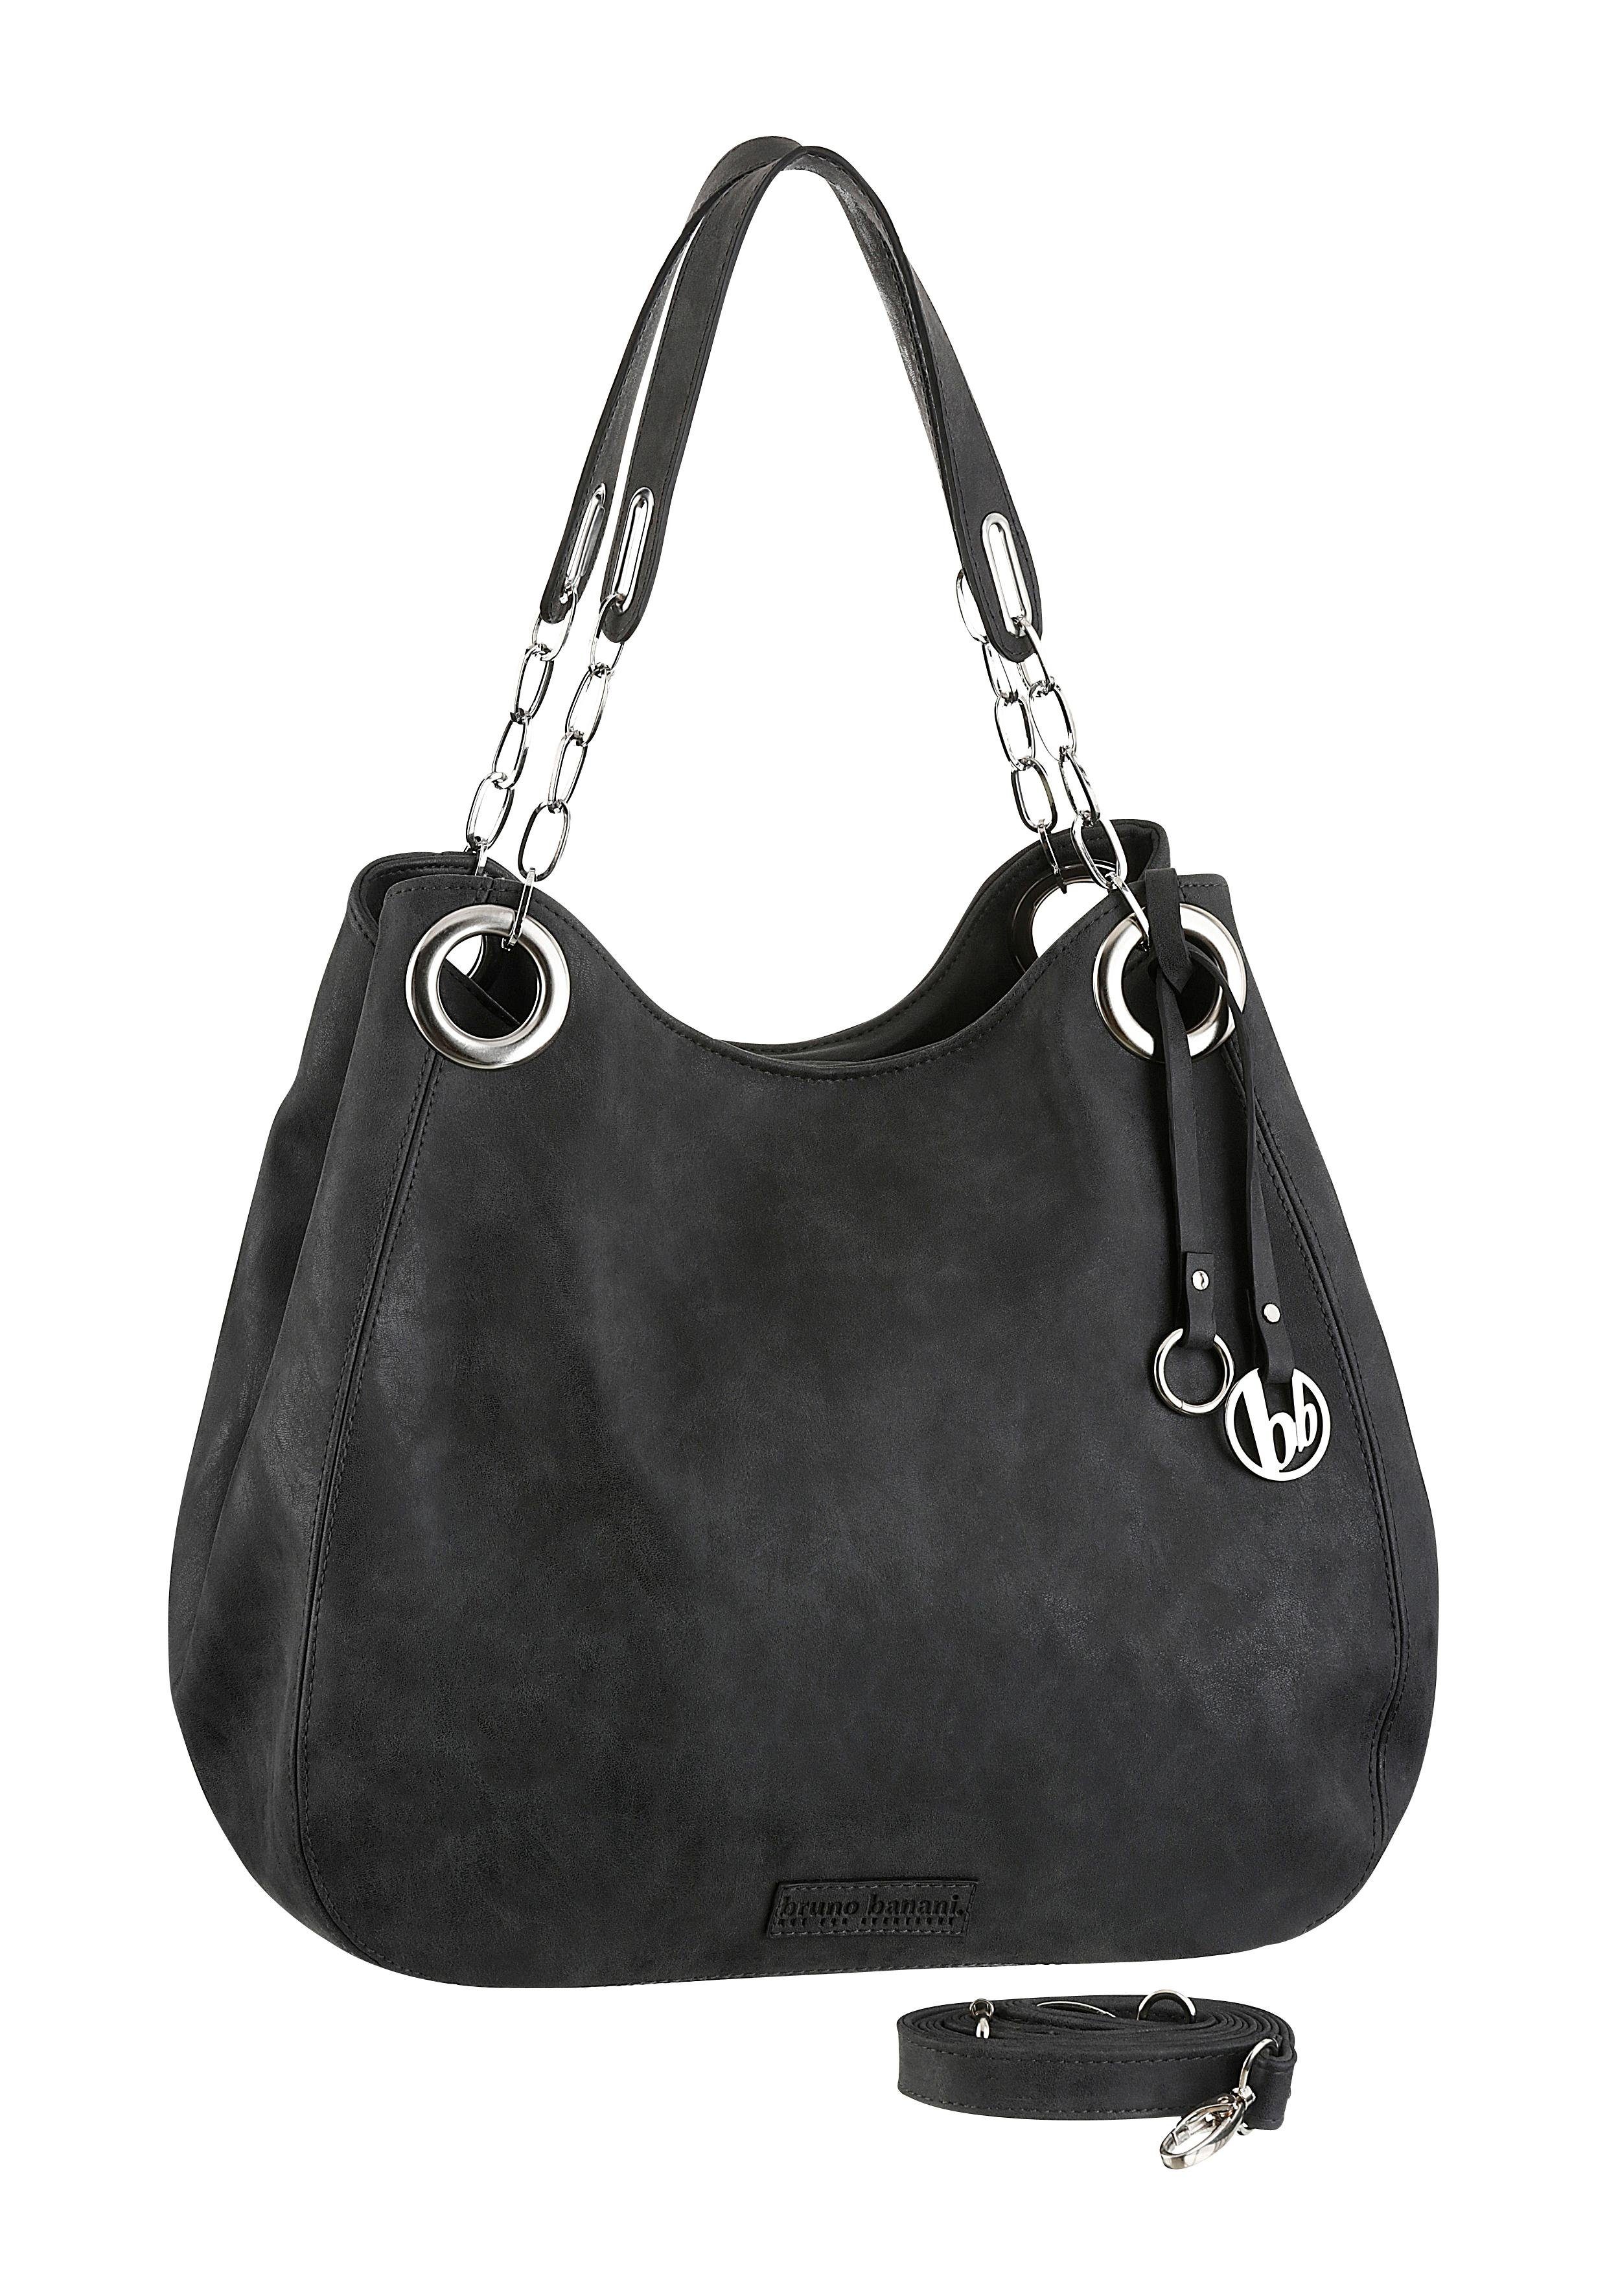 Handtasche in schwarz online kaufen | OTTO